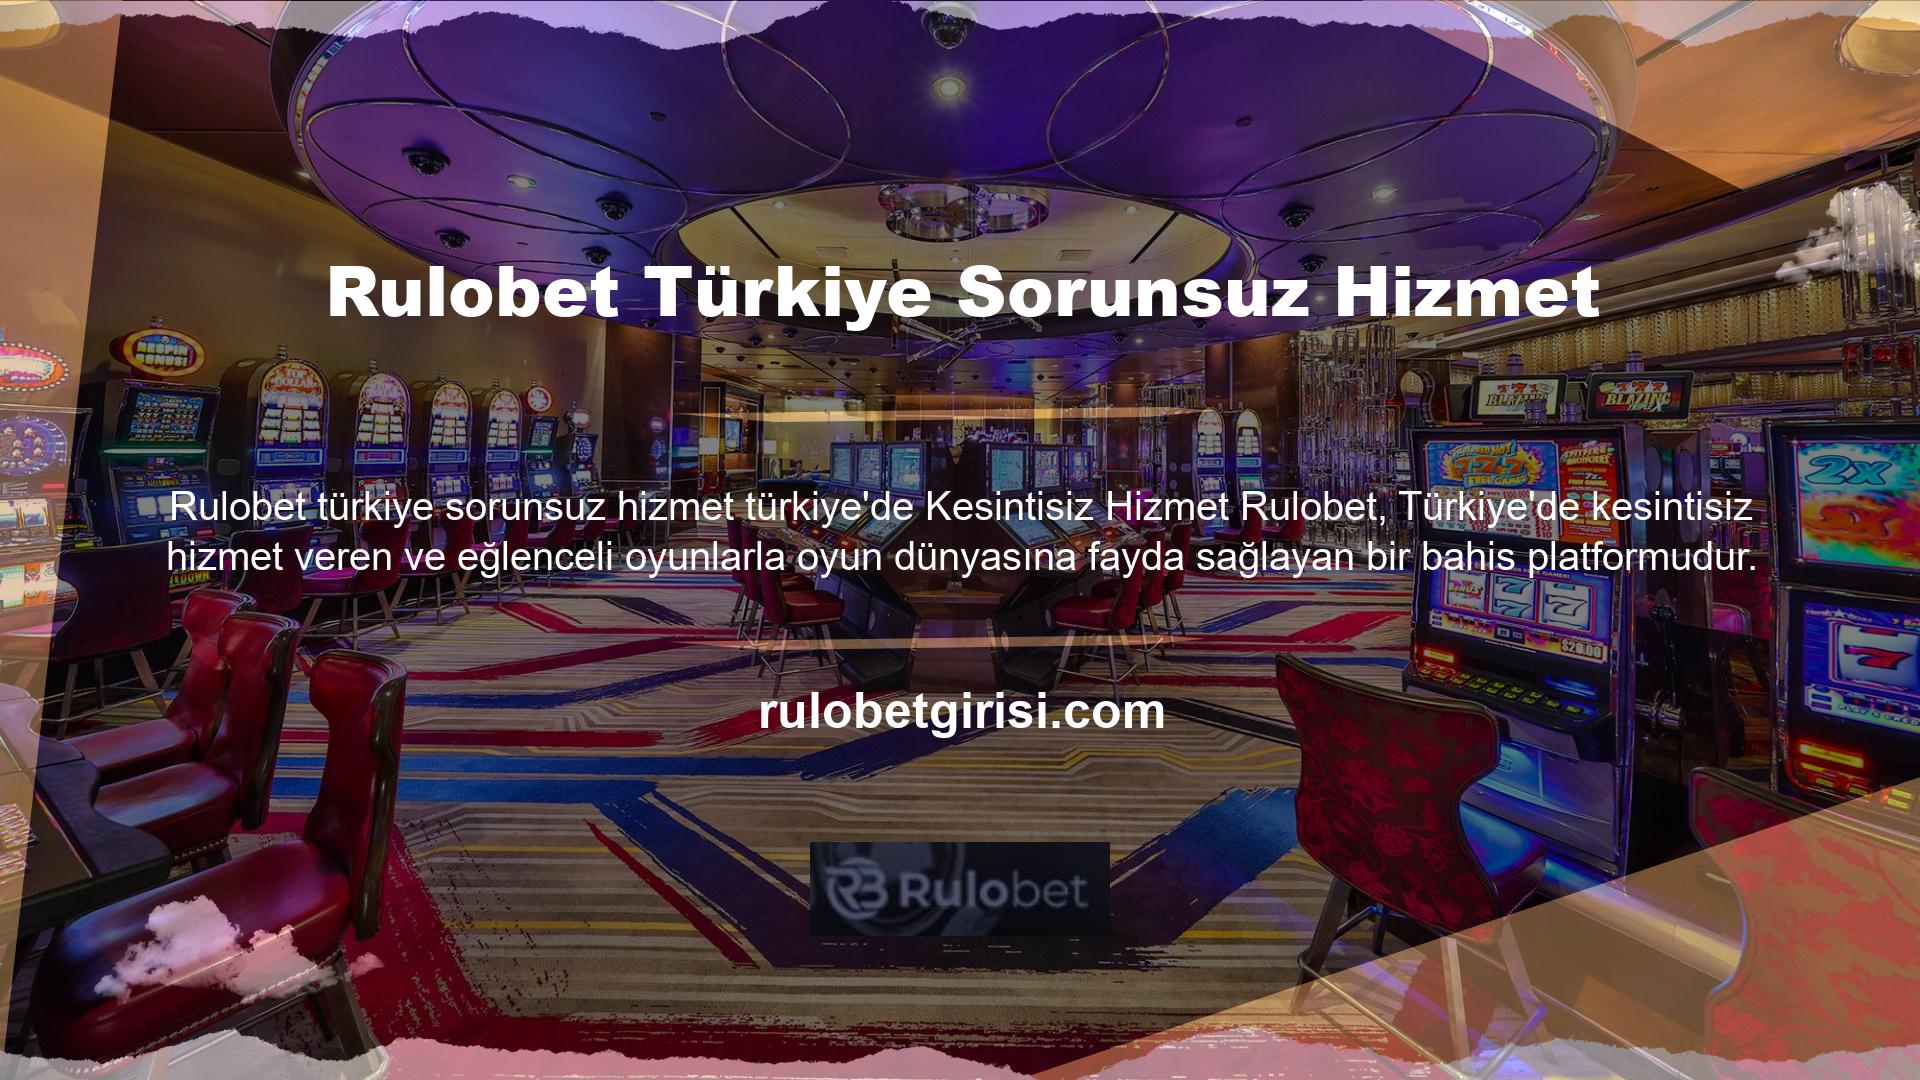 Türk oyun severler için çok çeşitli bahis ve casino oyunları sunuyoruz